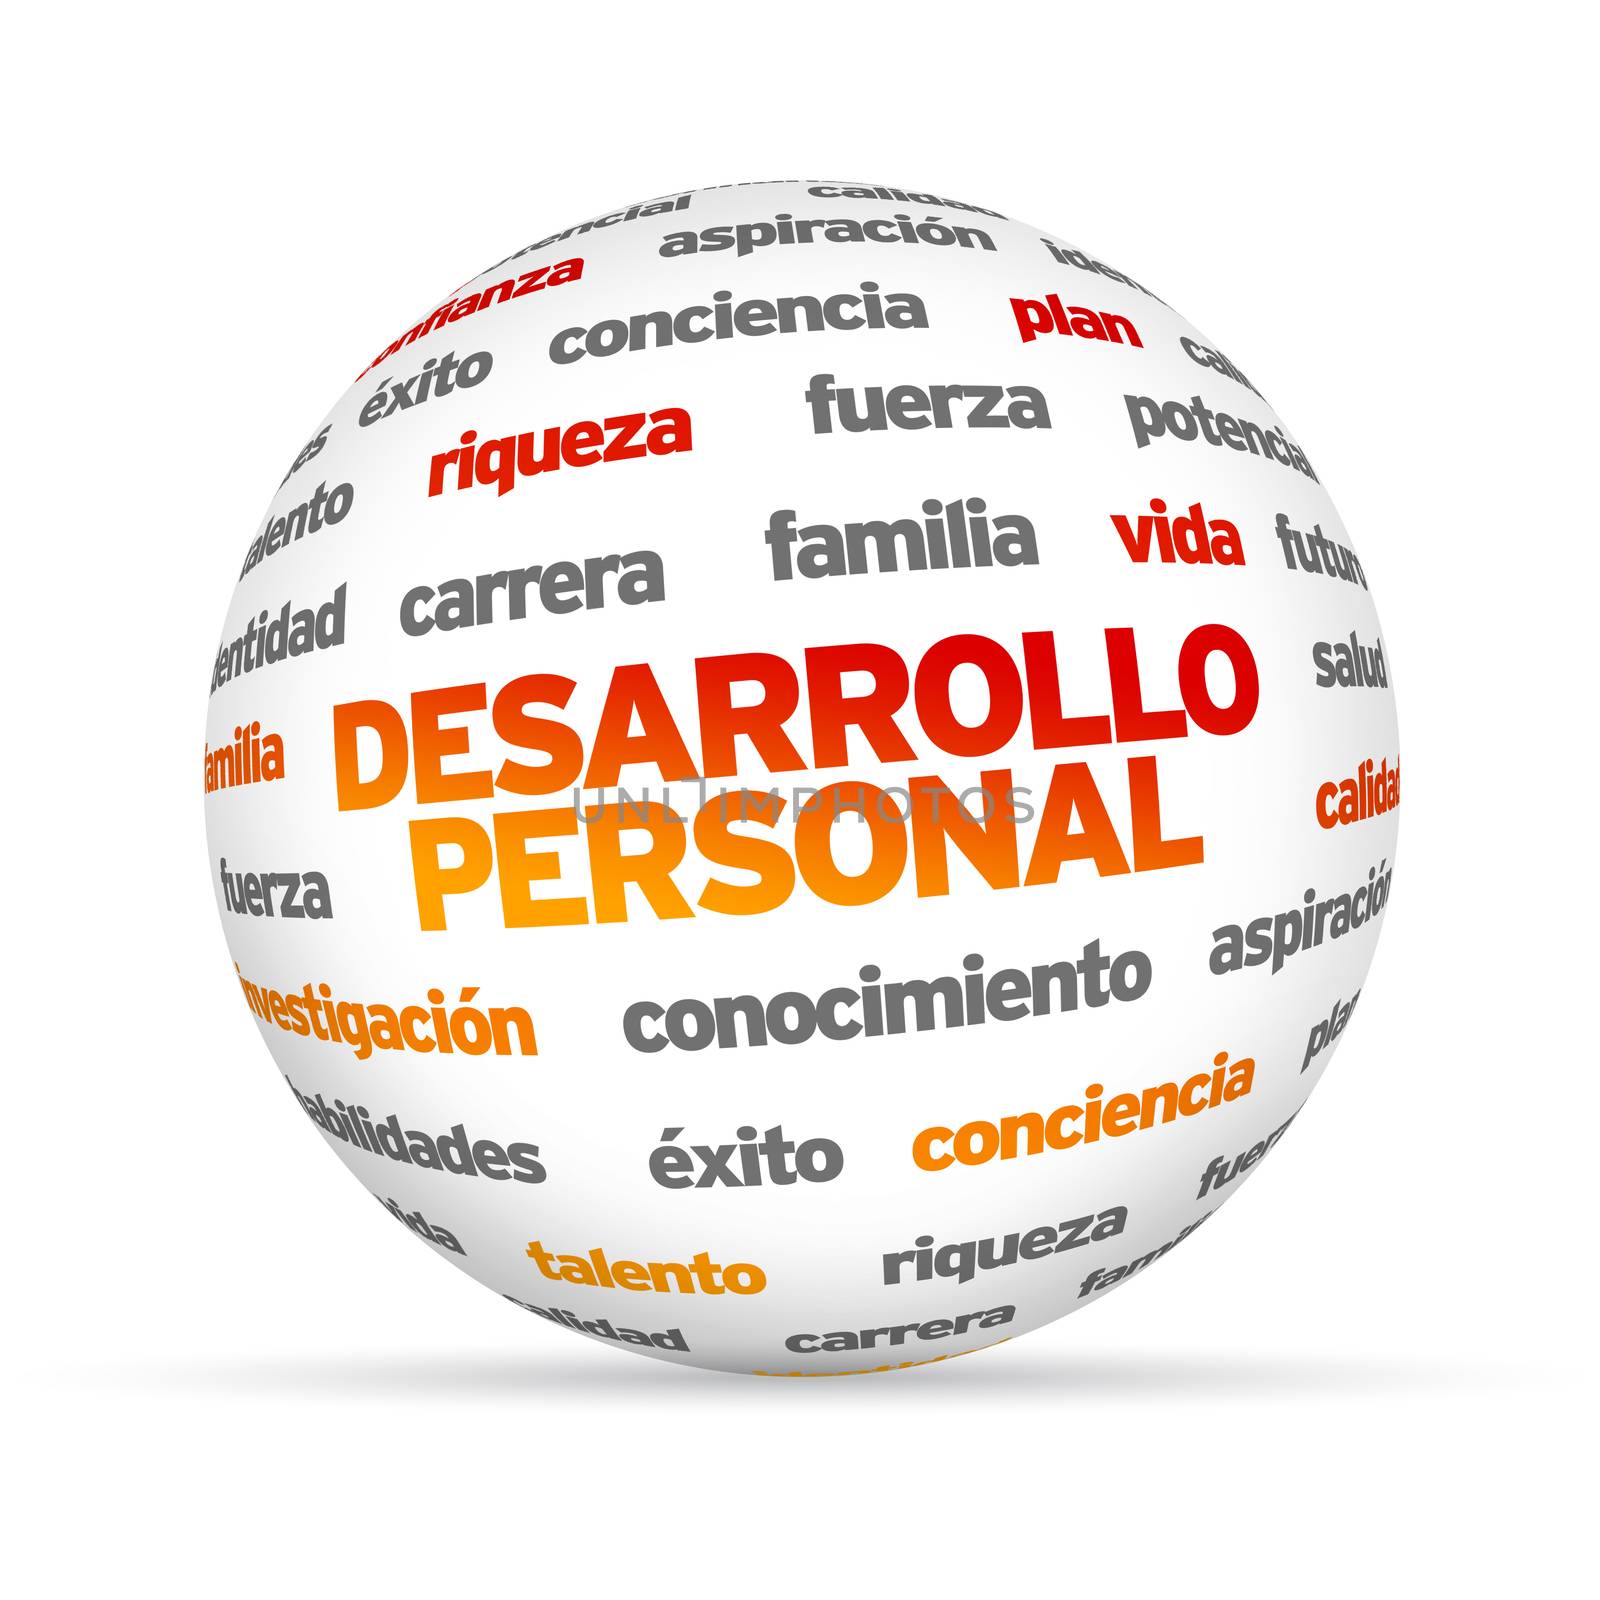 Personal Development Word Sphere (In Spanish) by kbuntu